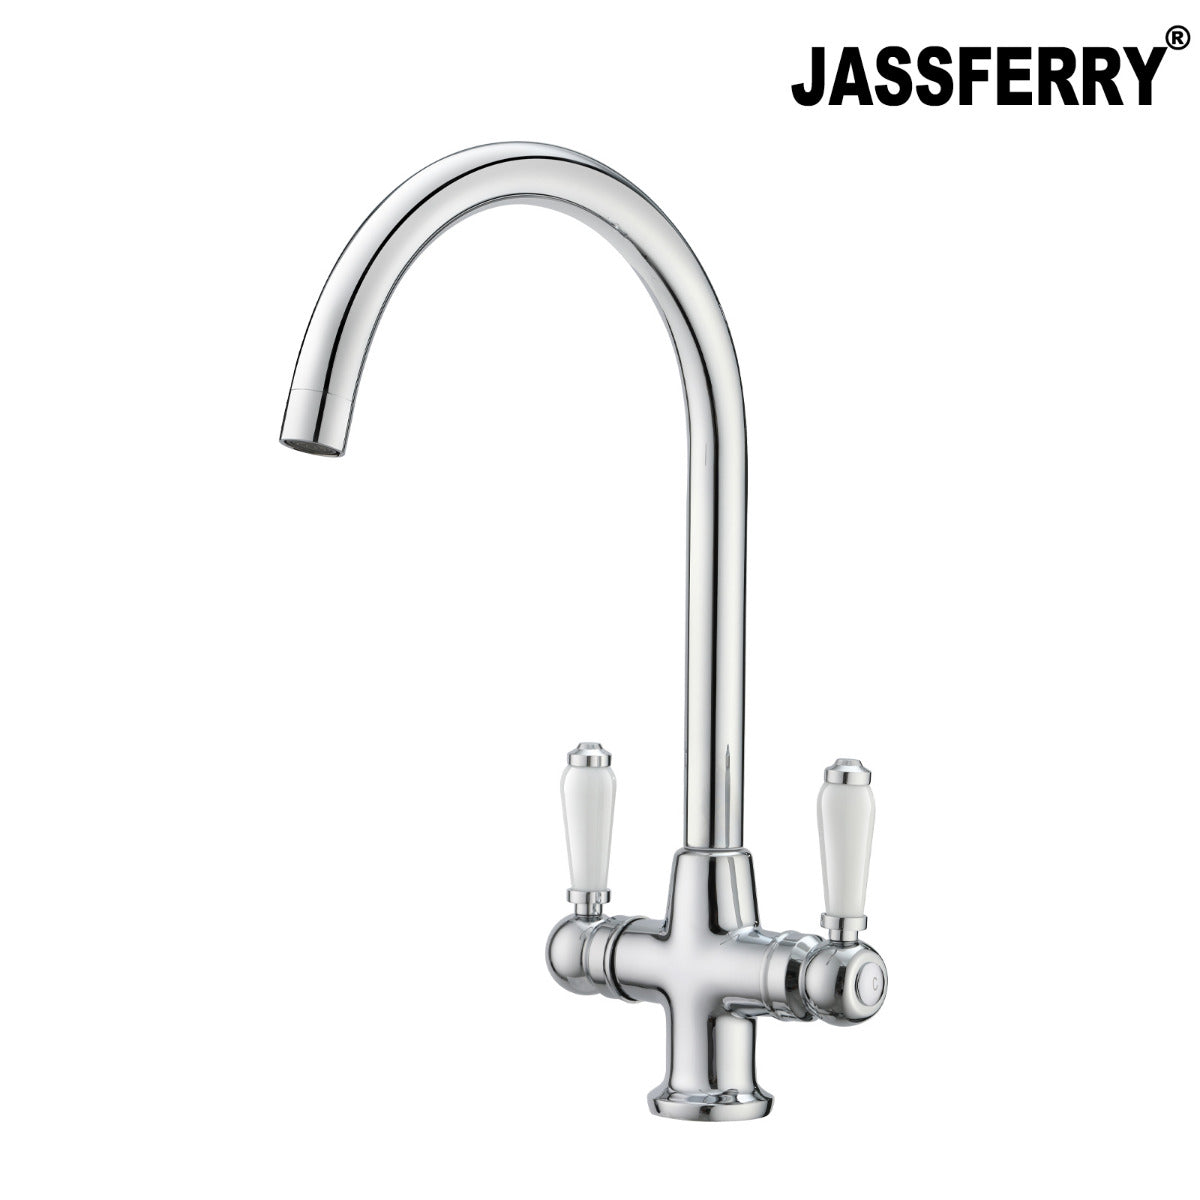 JassferryJASSFERRY Chrome Dual Flow Kitchen Sink Mixer Tap Ceramic Handle Twin LeverKitchen taps